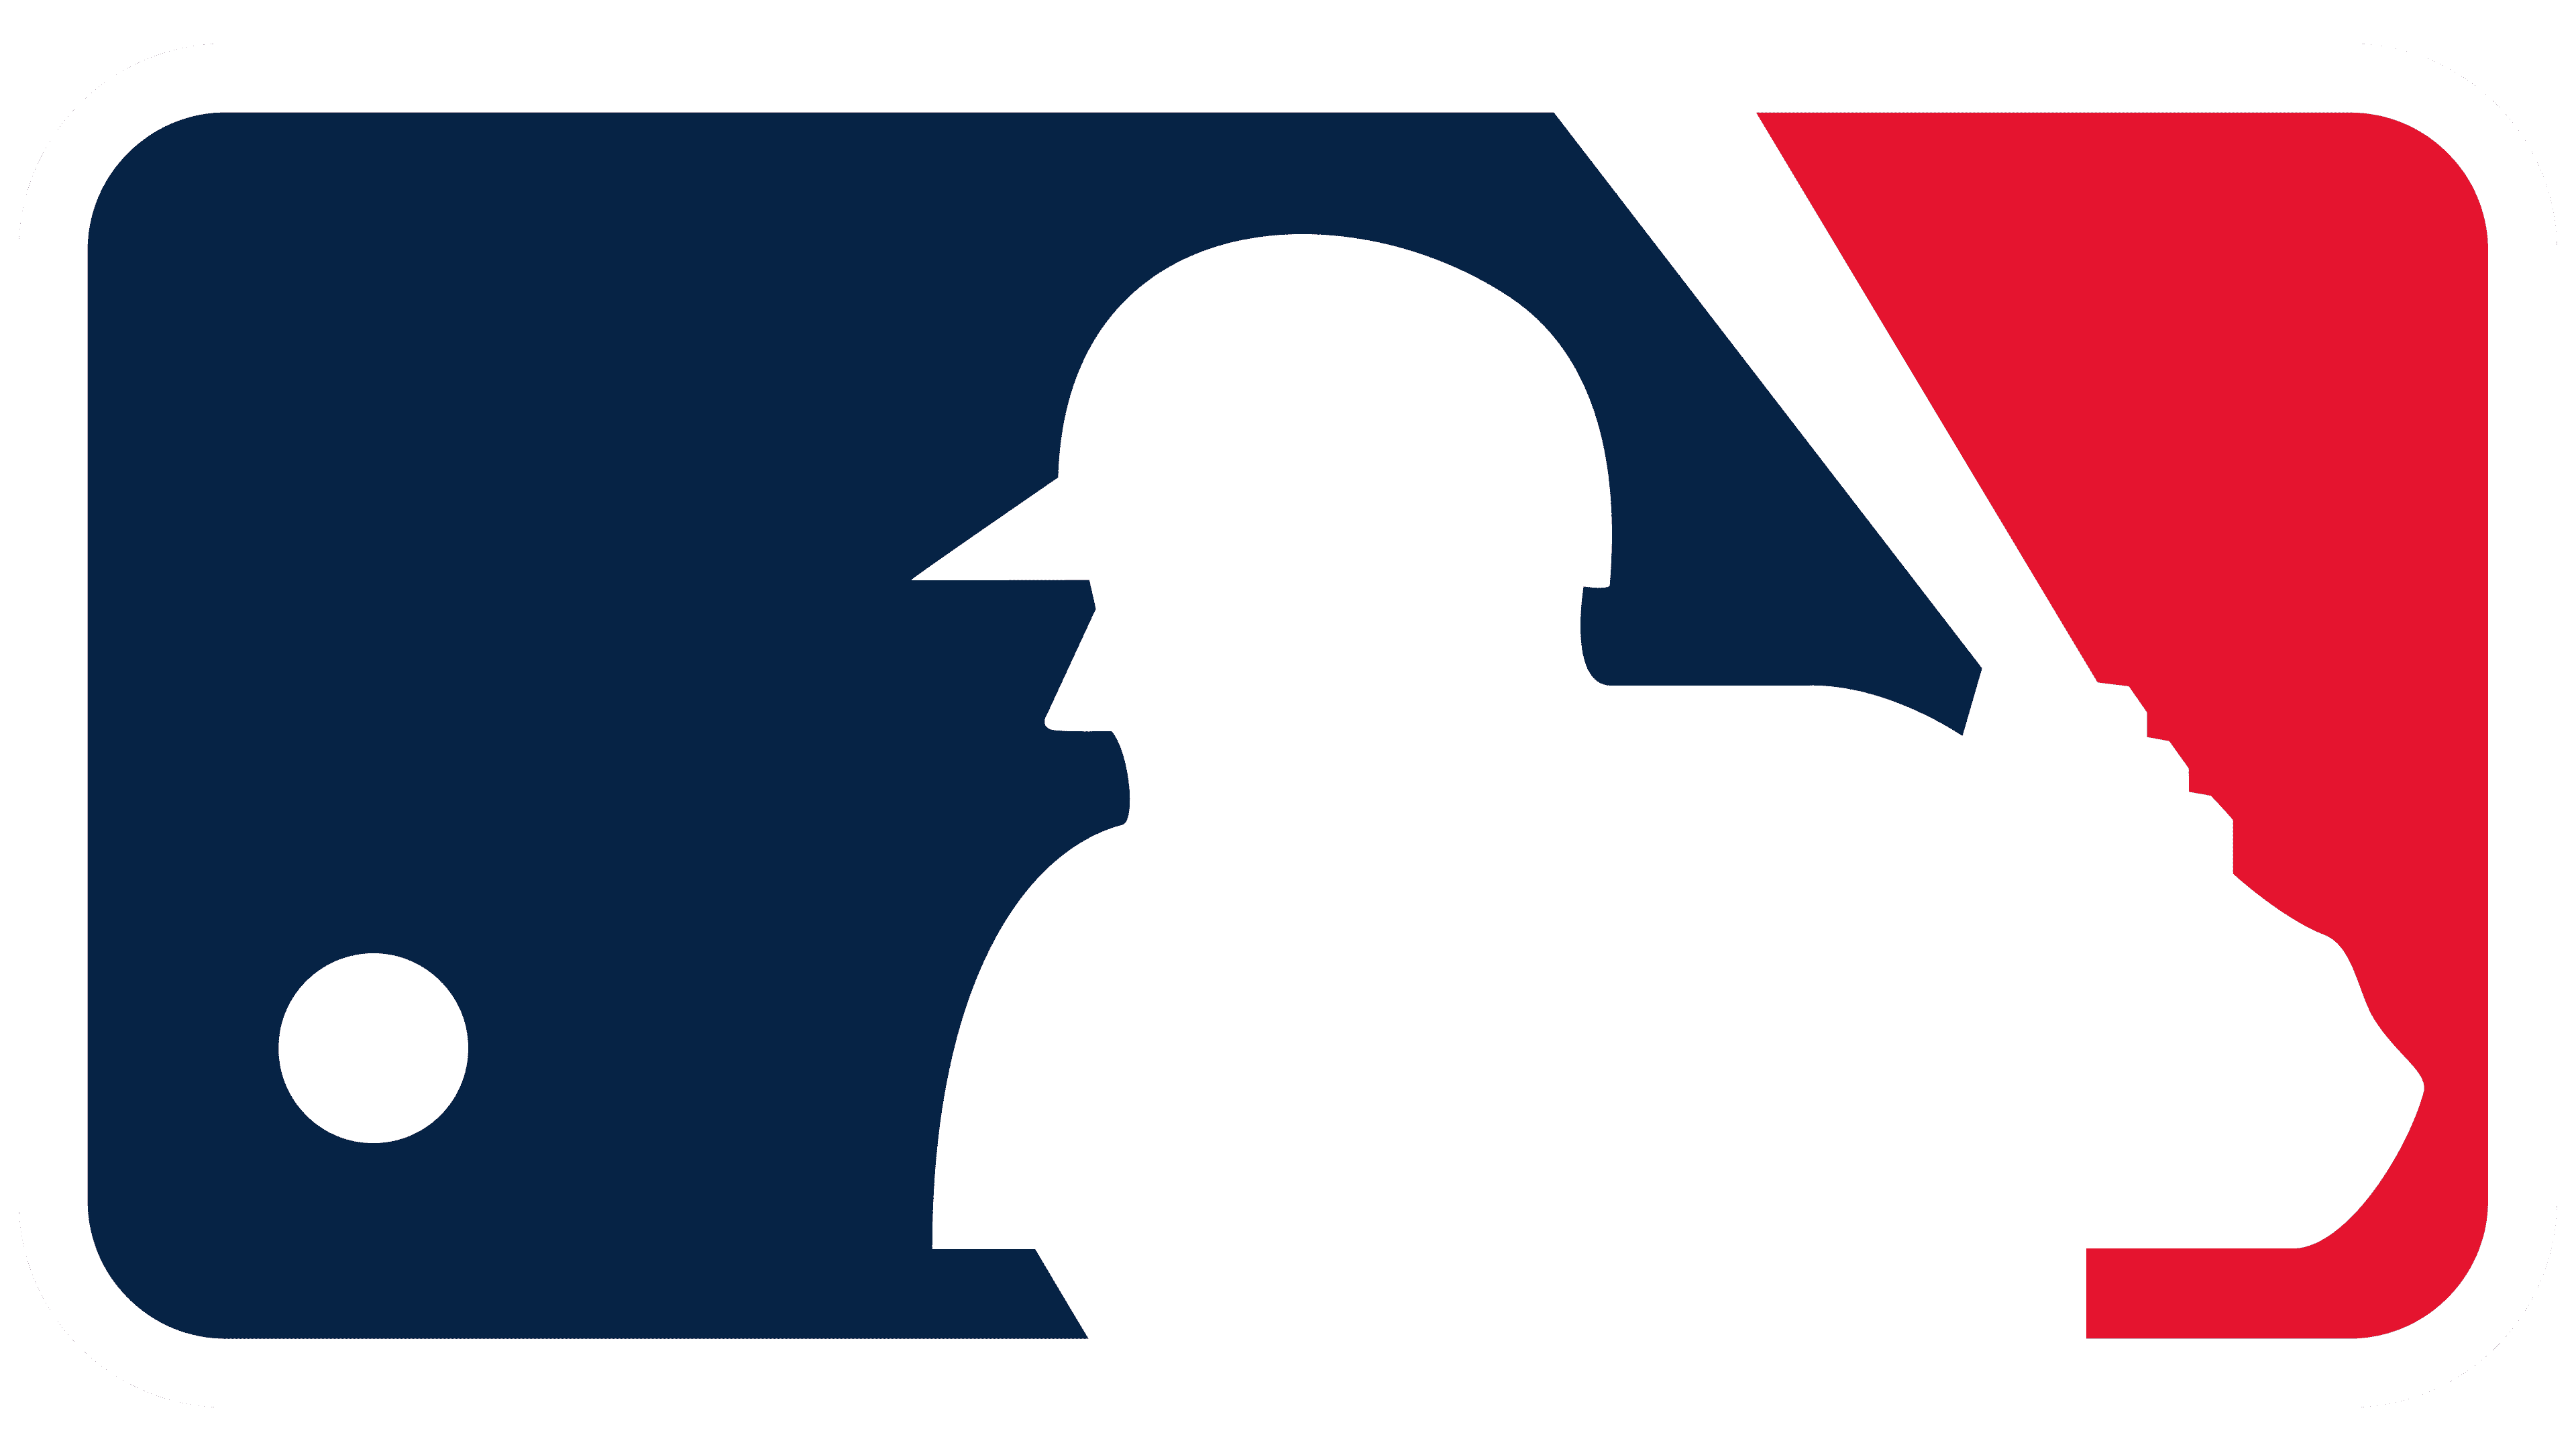 MLB Logo (Major League Baseball) and symbol, meaning, history, PNG ...